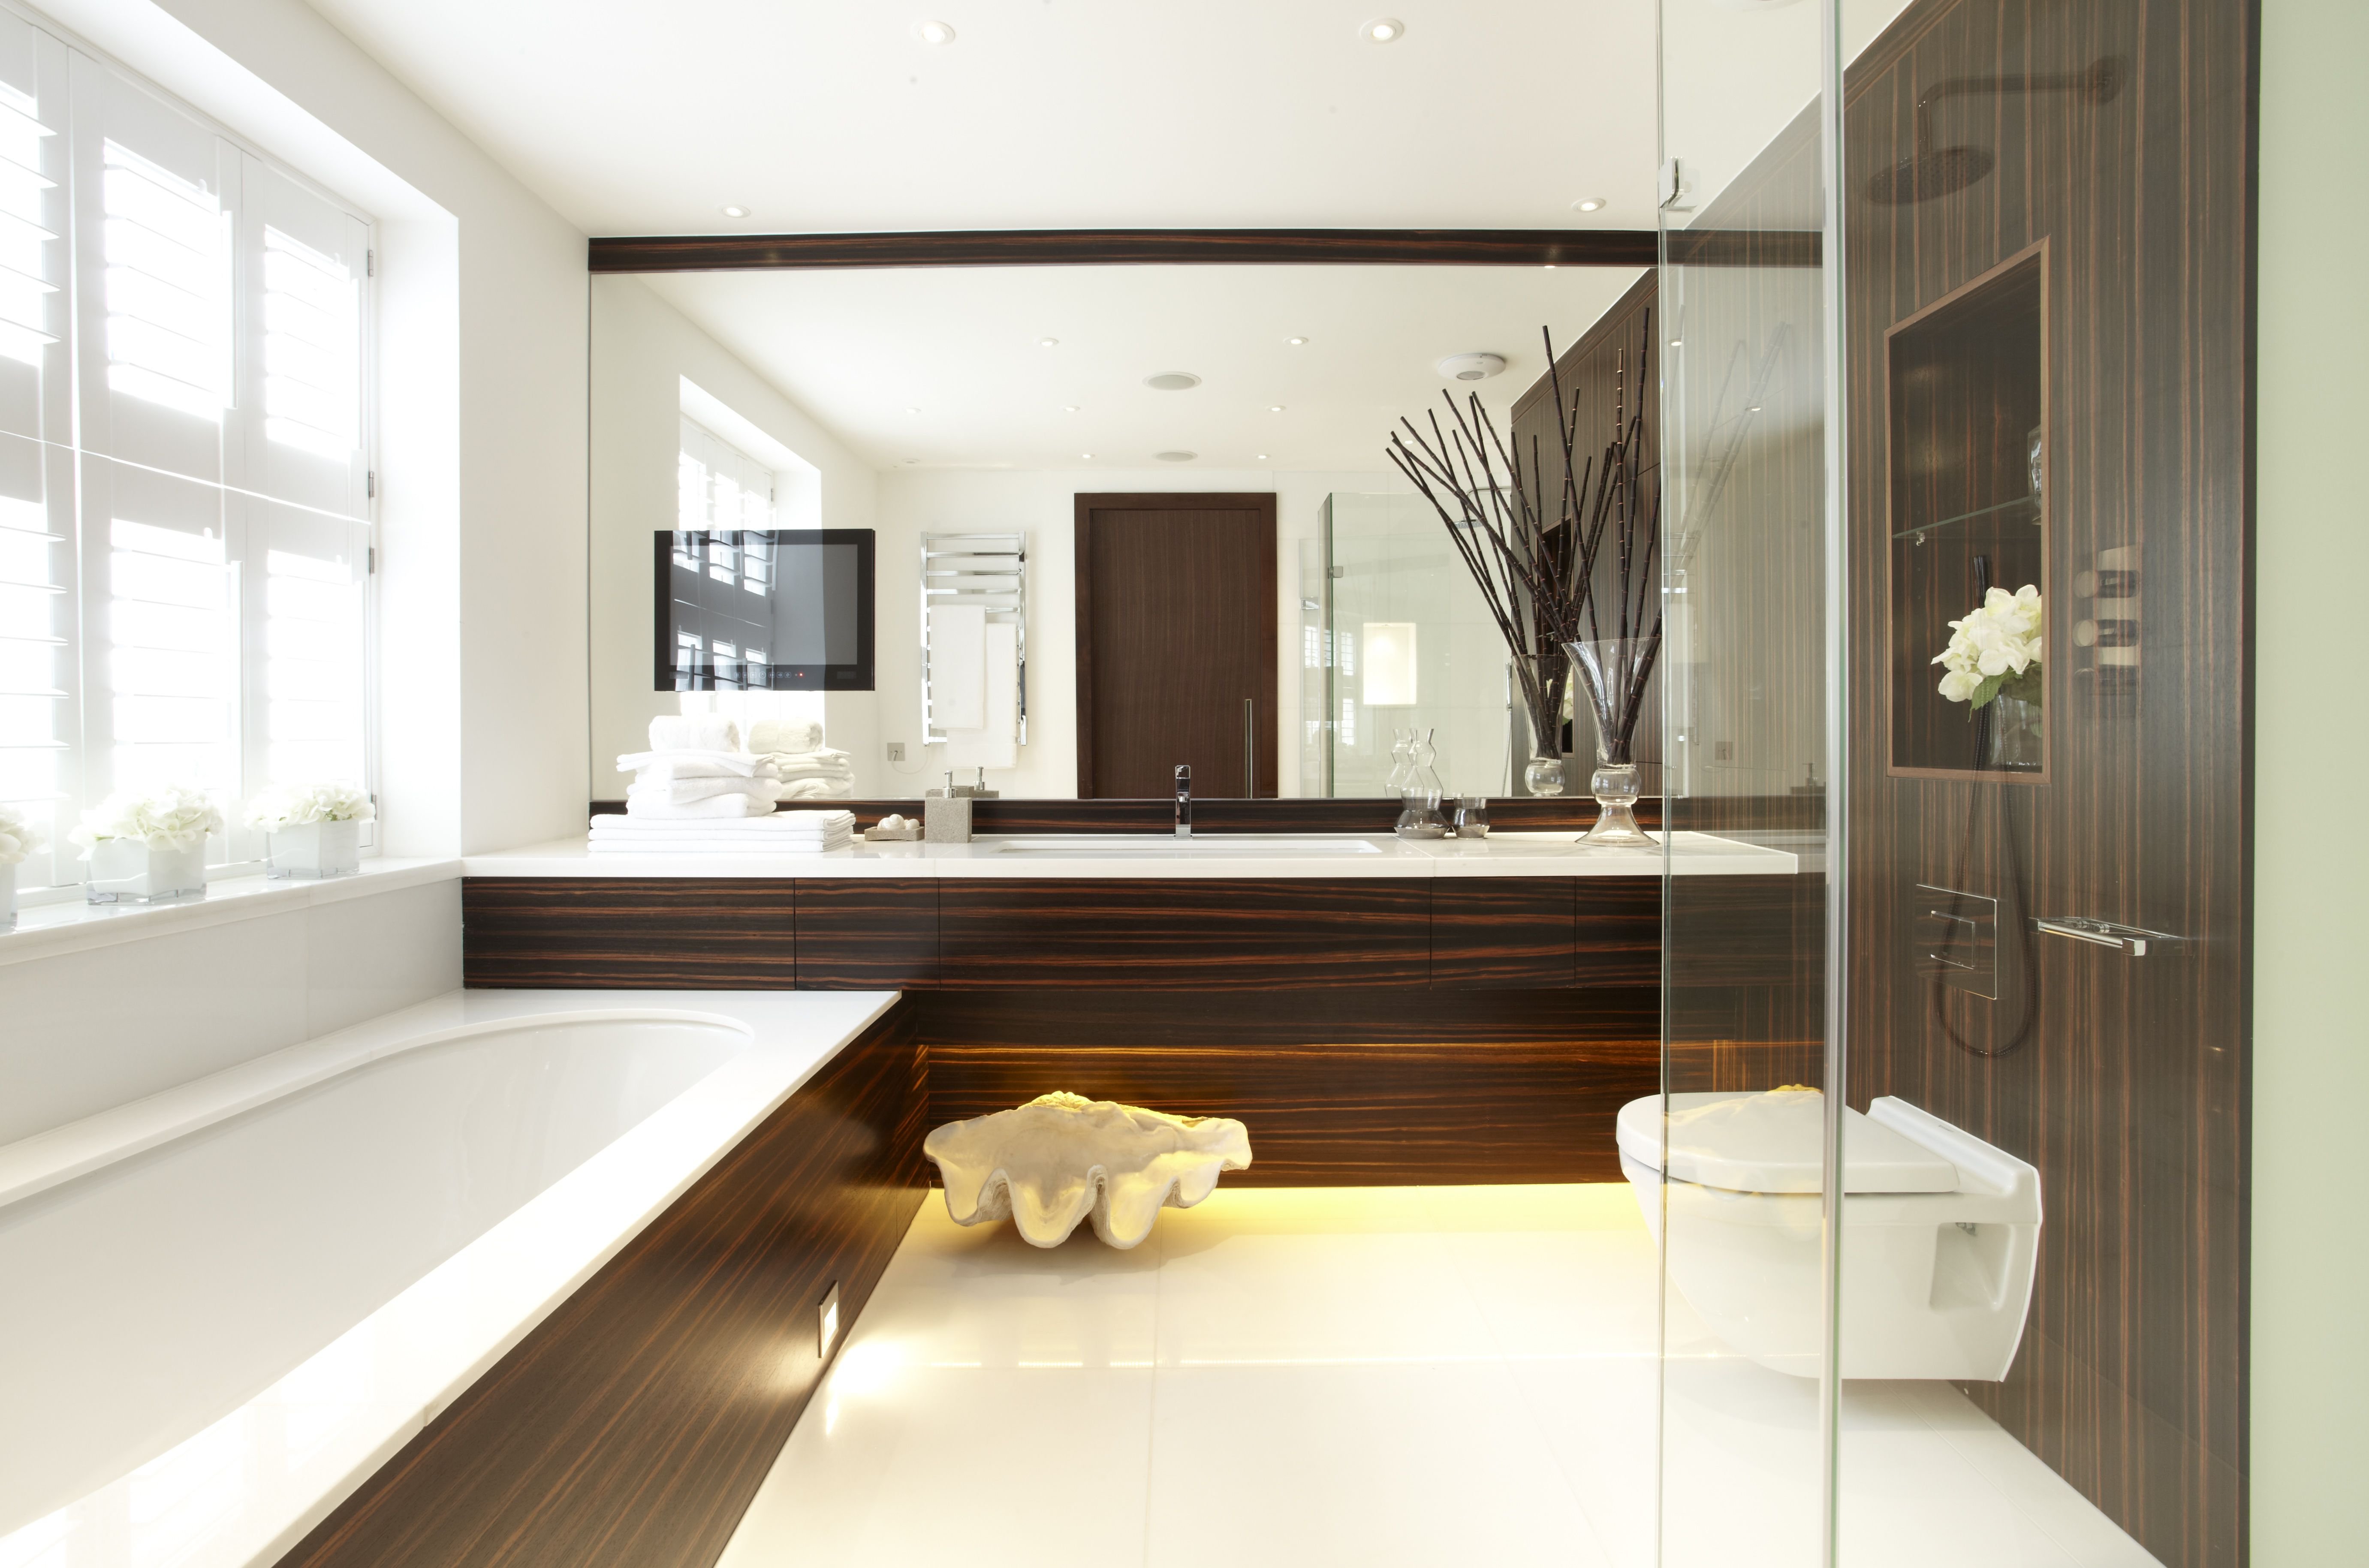 Ванна модерн: отделочные материалы, сантехника, мебель, освещение